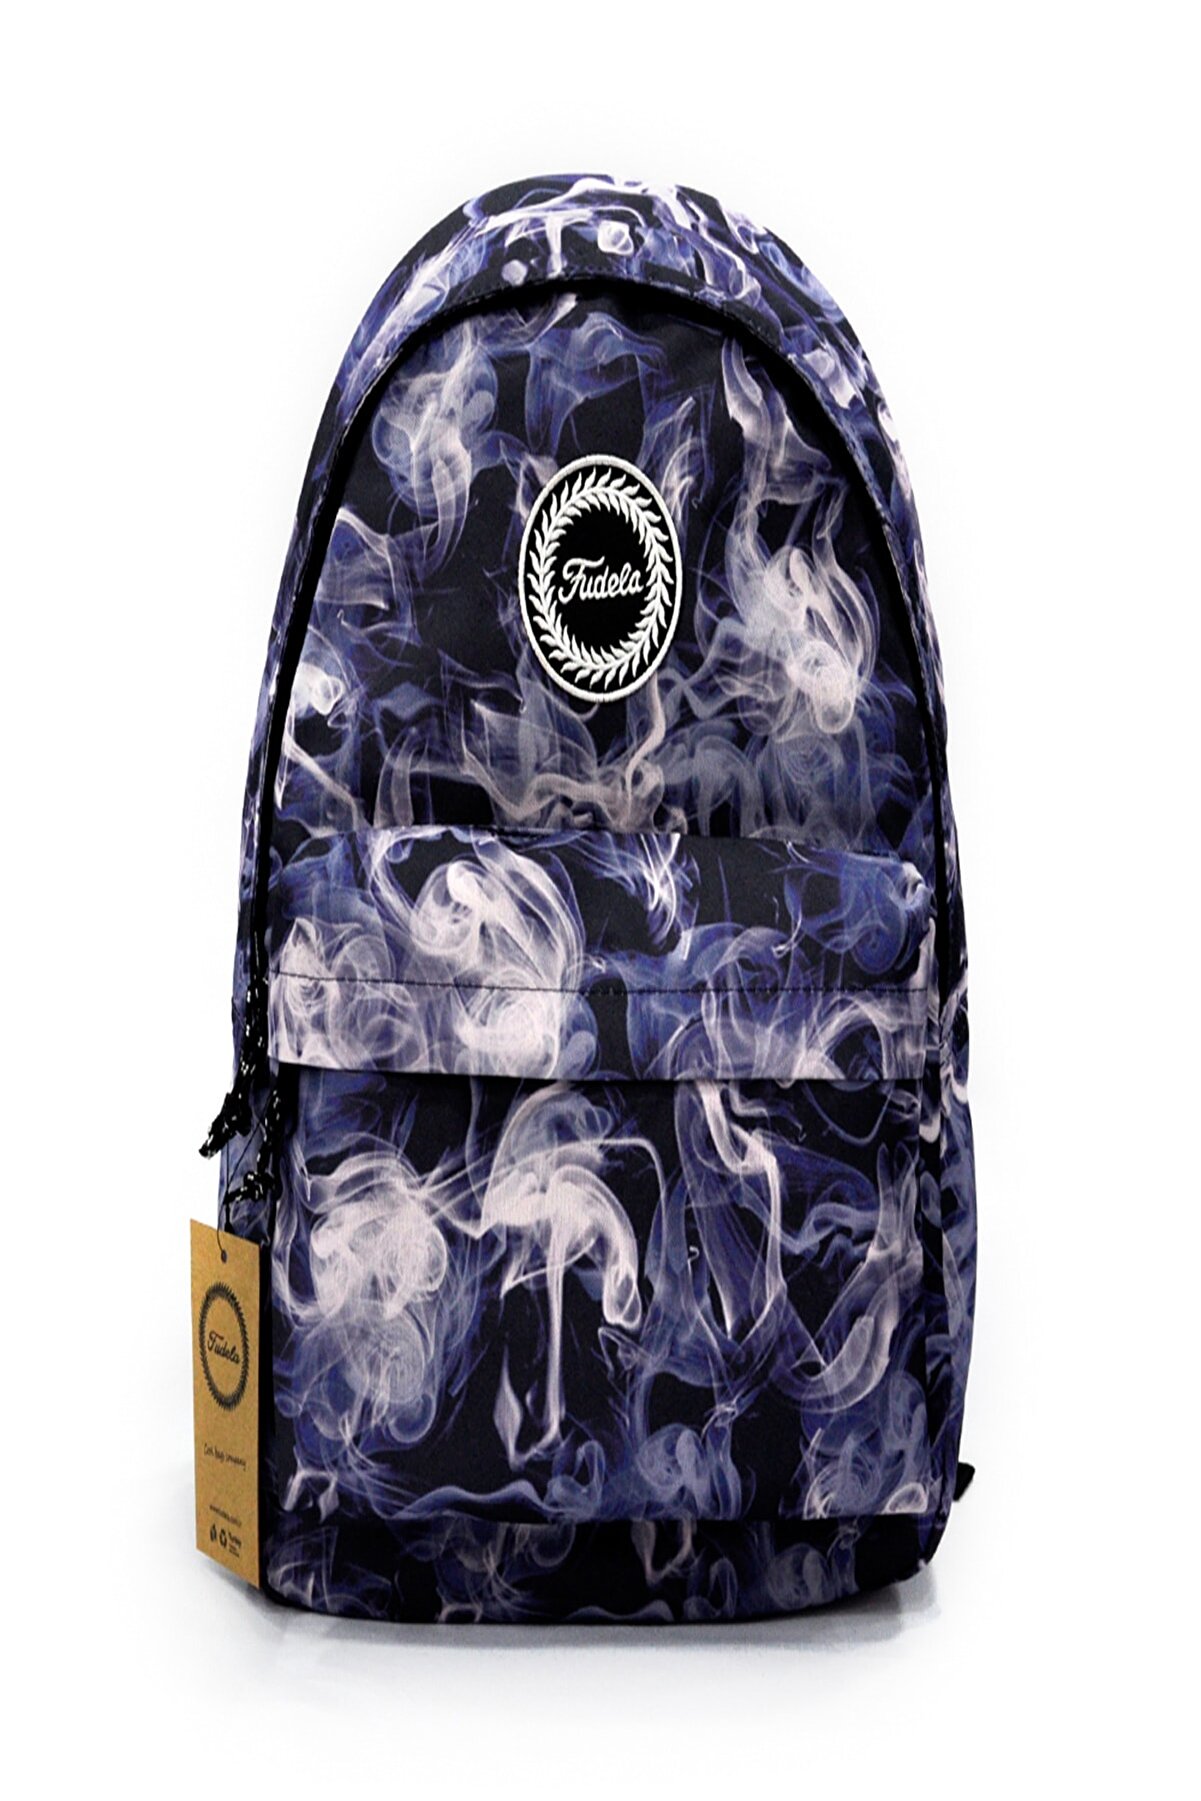 Fudela Outdoor Backpack